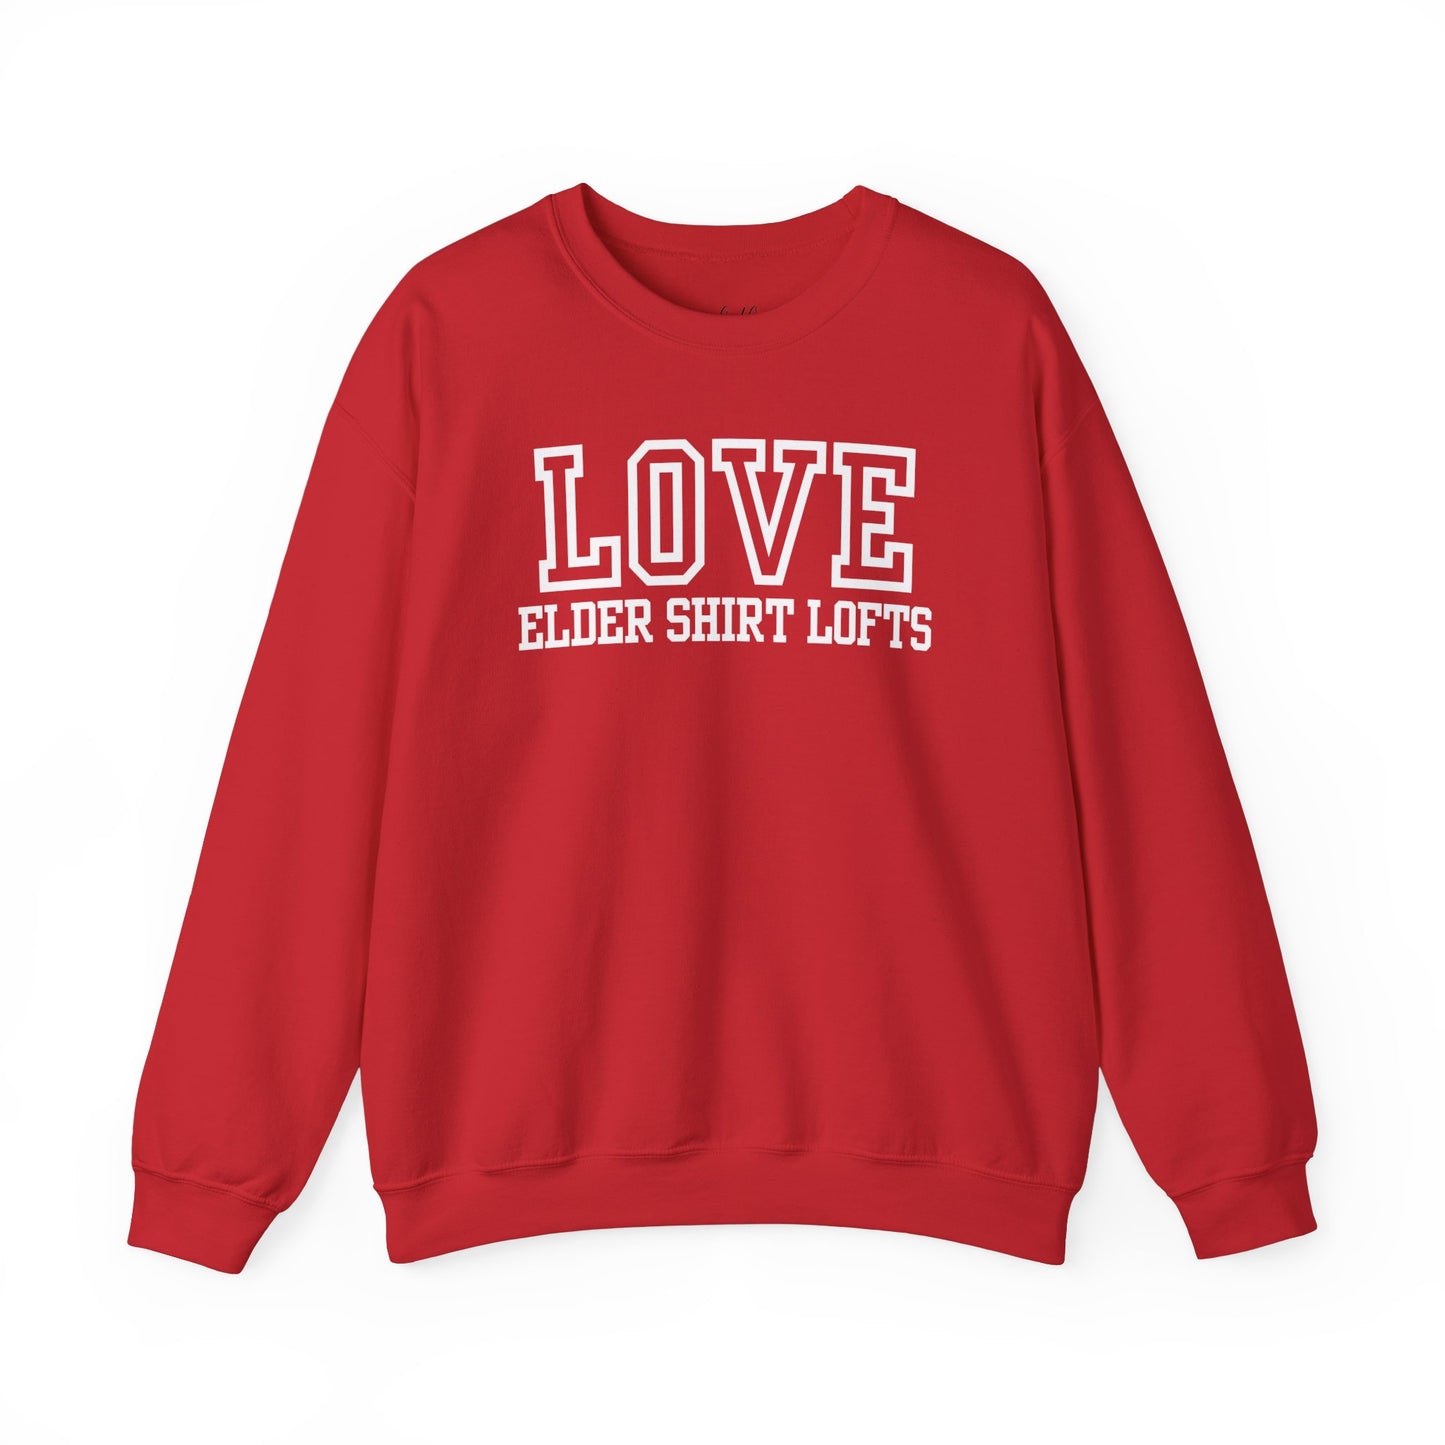 Love Elder Shirt Lofts Varsity Sweatshirt